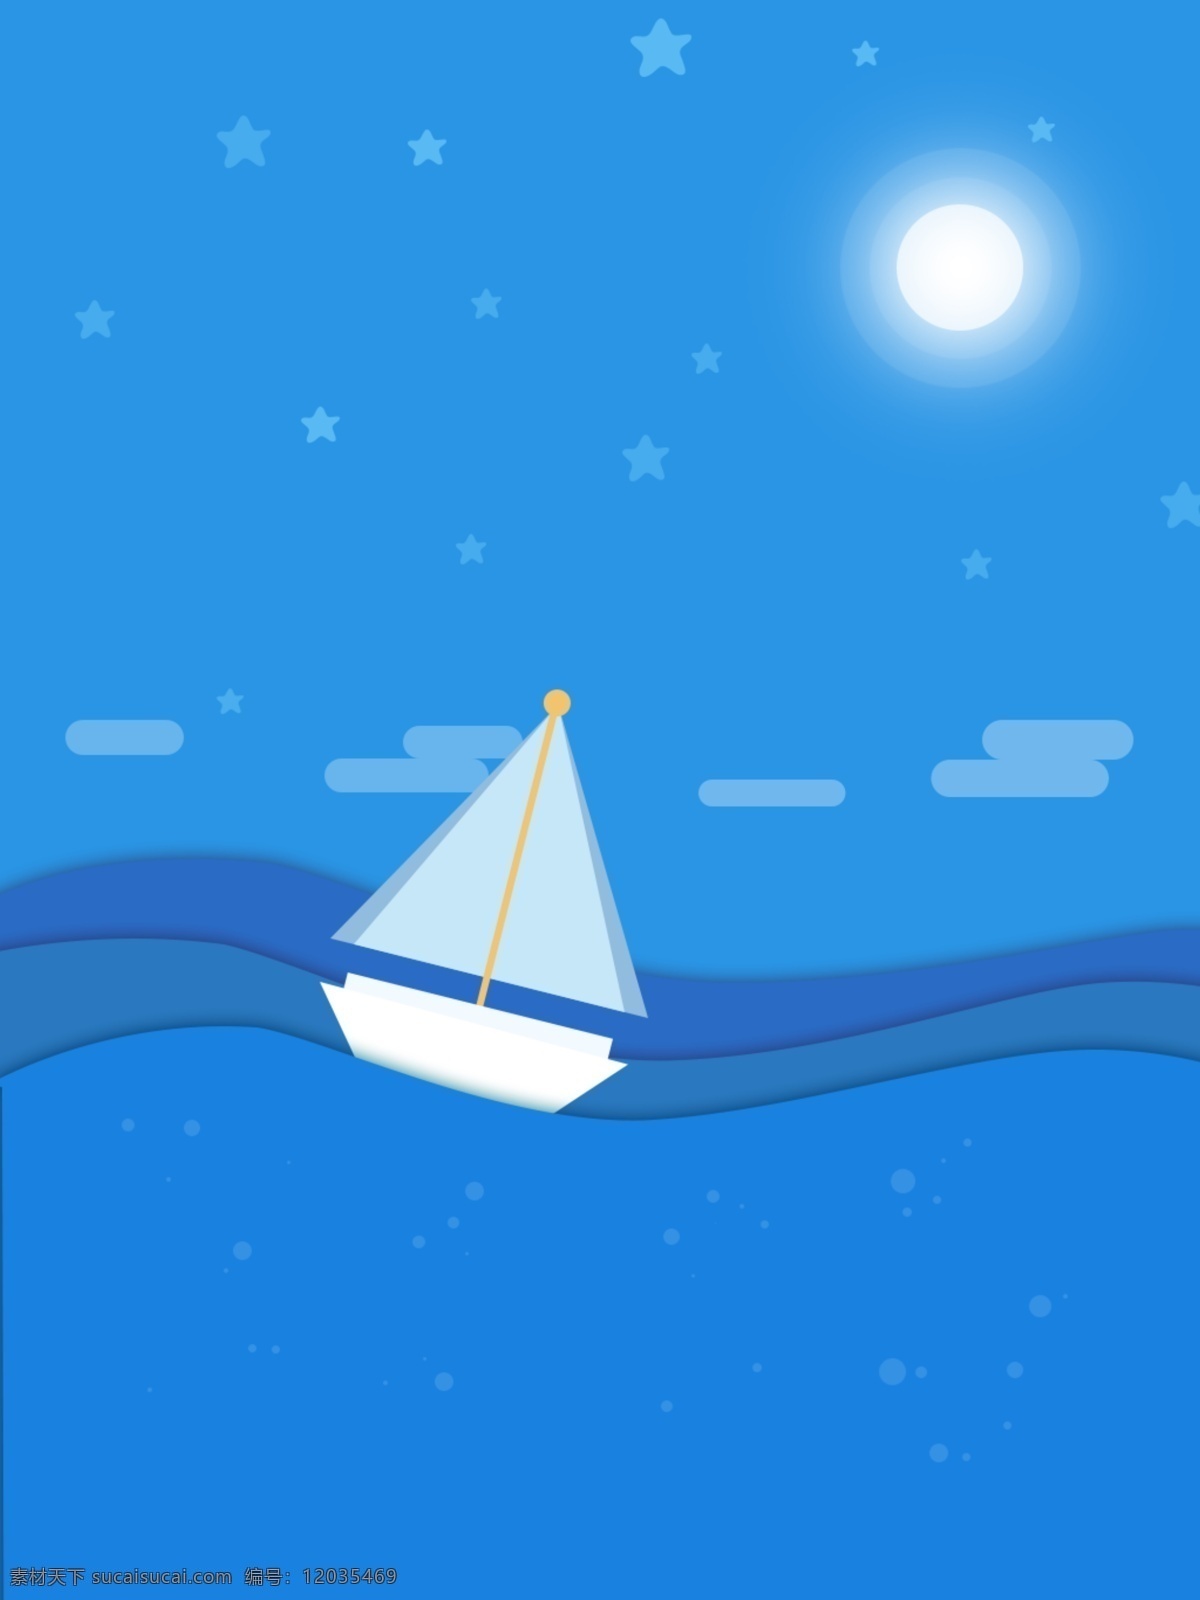 蓝色 小 清新 国际 航海 日 卡通 背景 小清新 国际航海日 波浪 帆船 月亮 星星